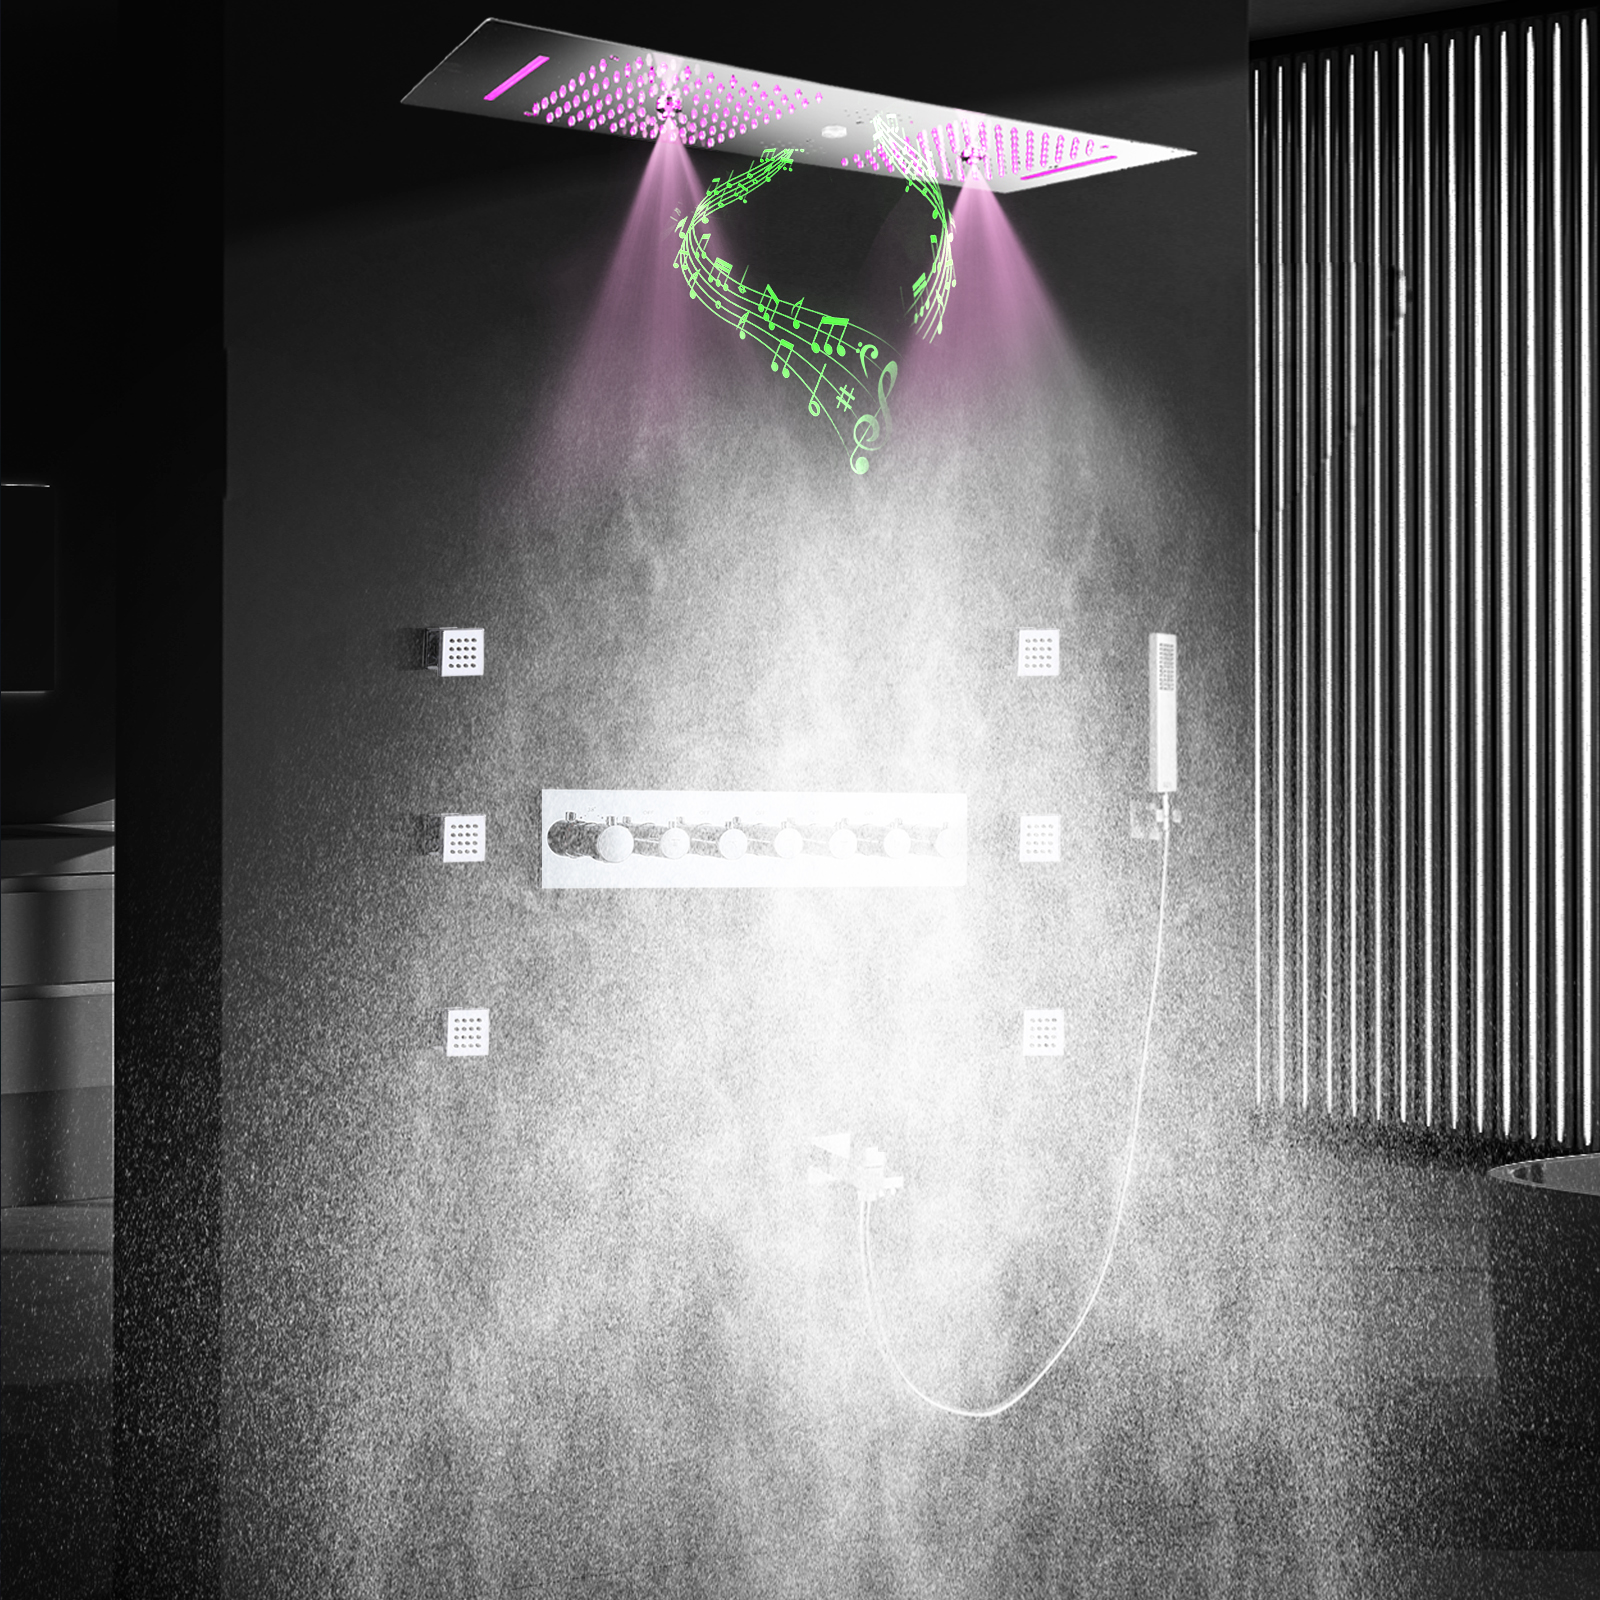 الكروم مرآة 900*300 LED رأس دش مع سماعة موسيقية سقف حمام مزدوج جزءا لا يتجزأ من الحمام دش ثرموستاتي صنبور مجموعة